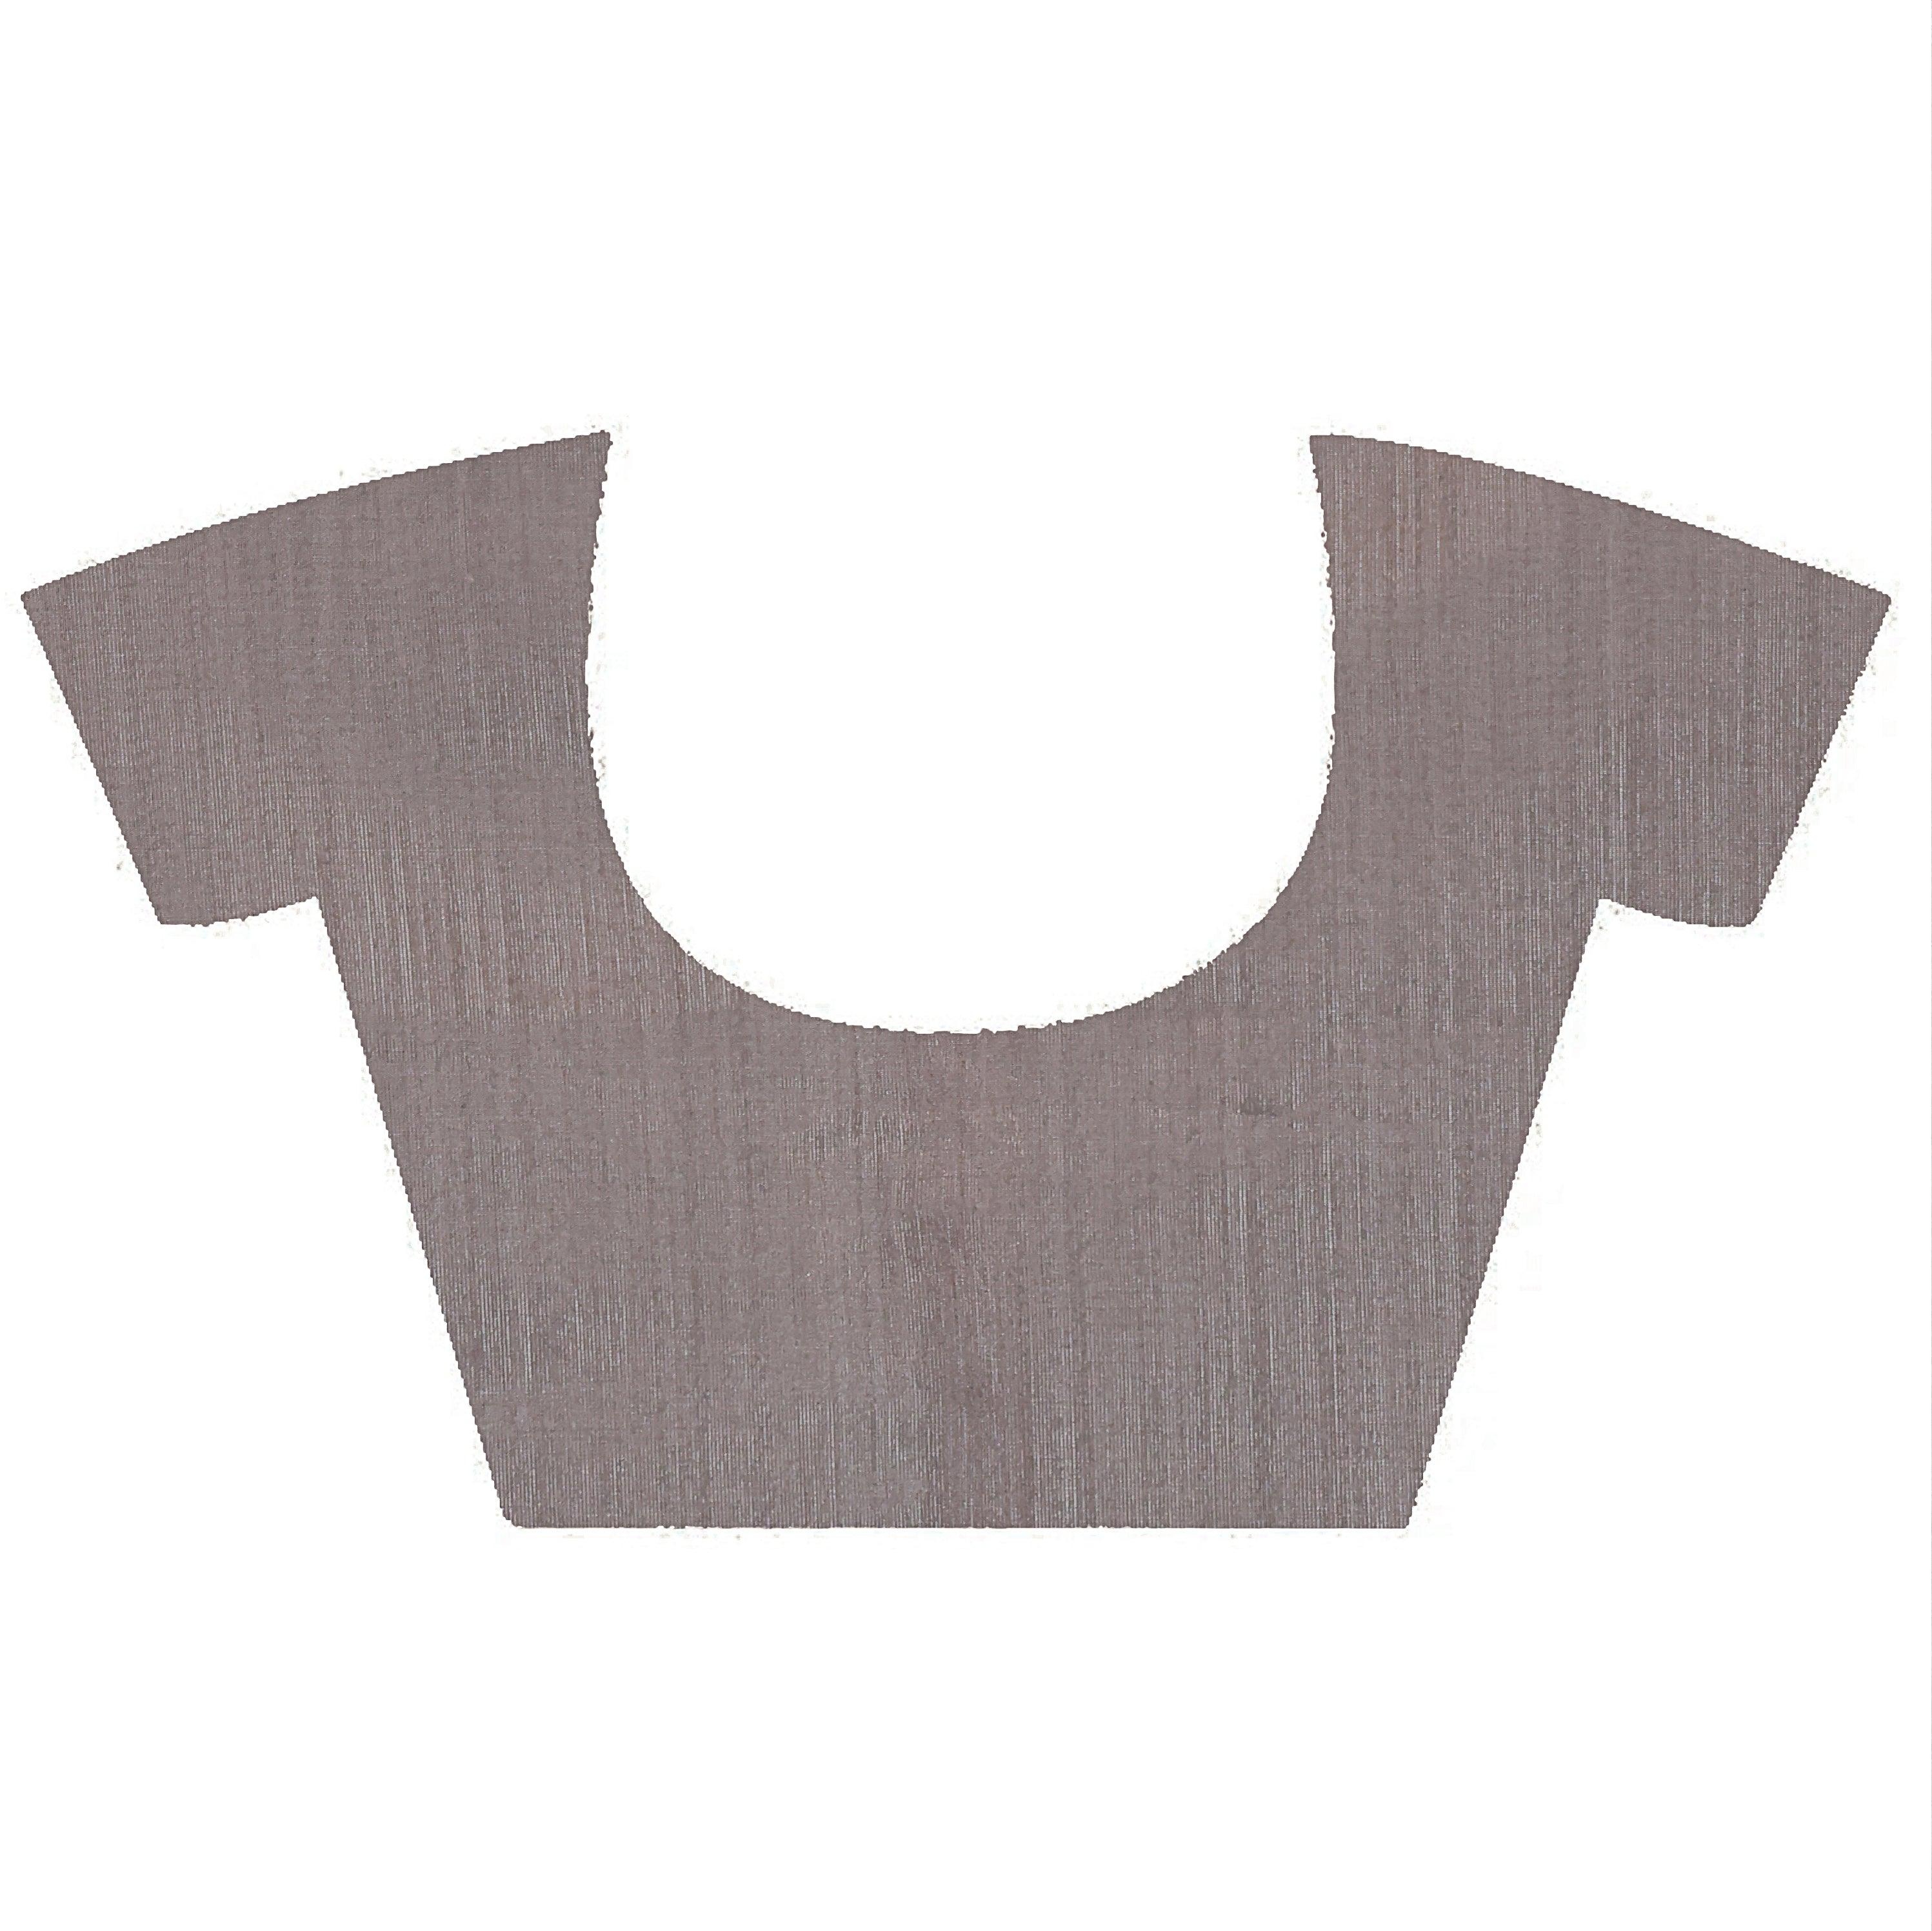 KAVVYA soft & lightweight grey color benarasi handloom saree - KAVVYA 